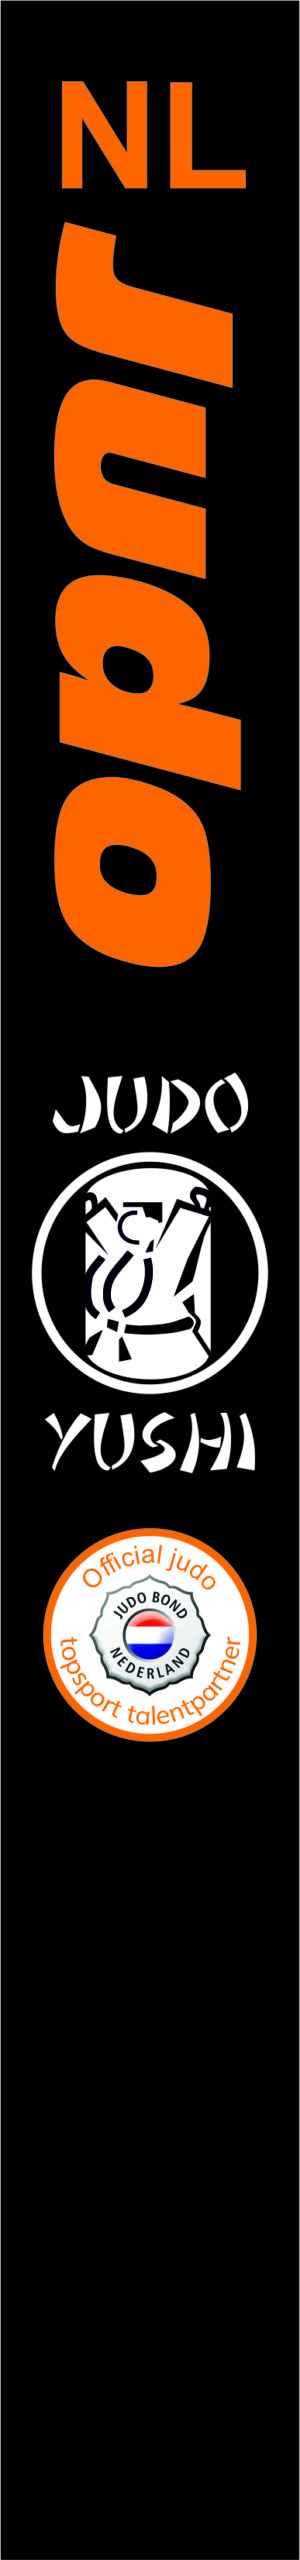 NL JUDO banner Judo Yushi